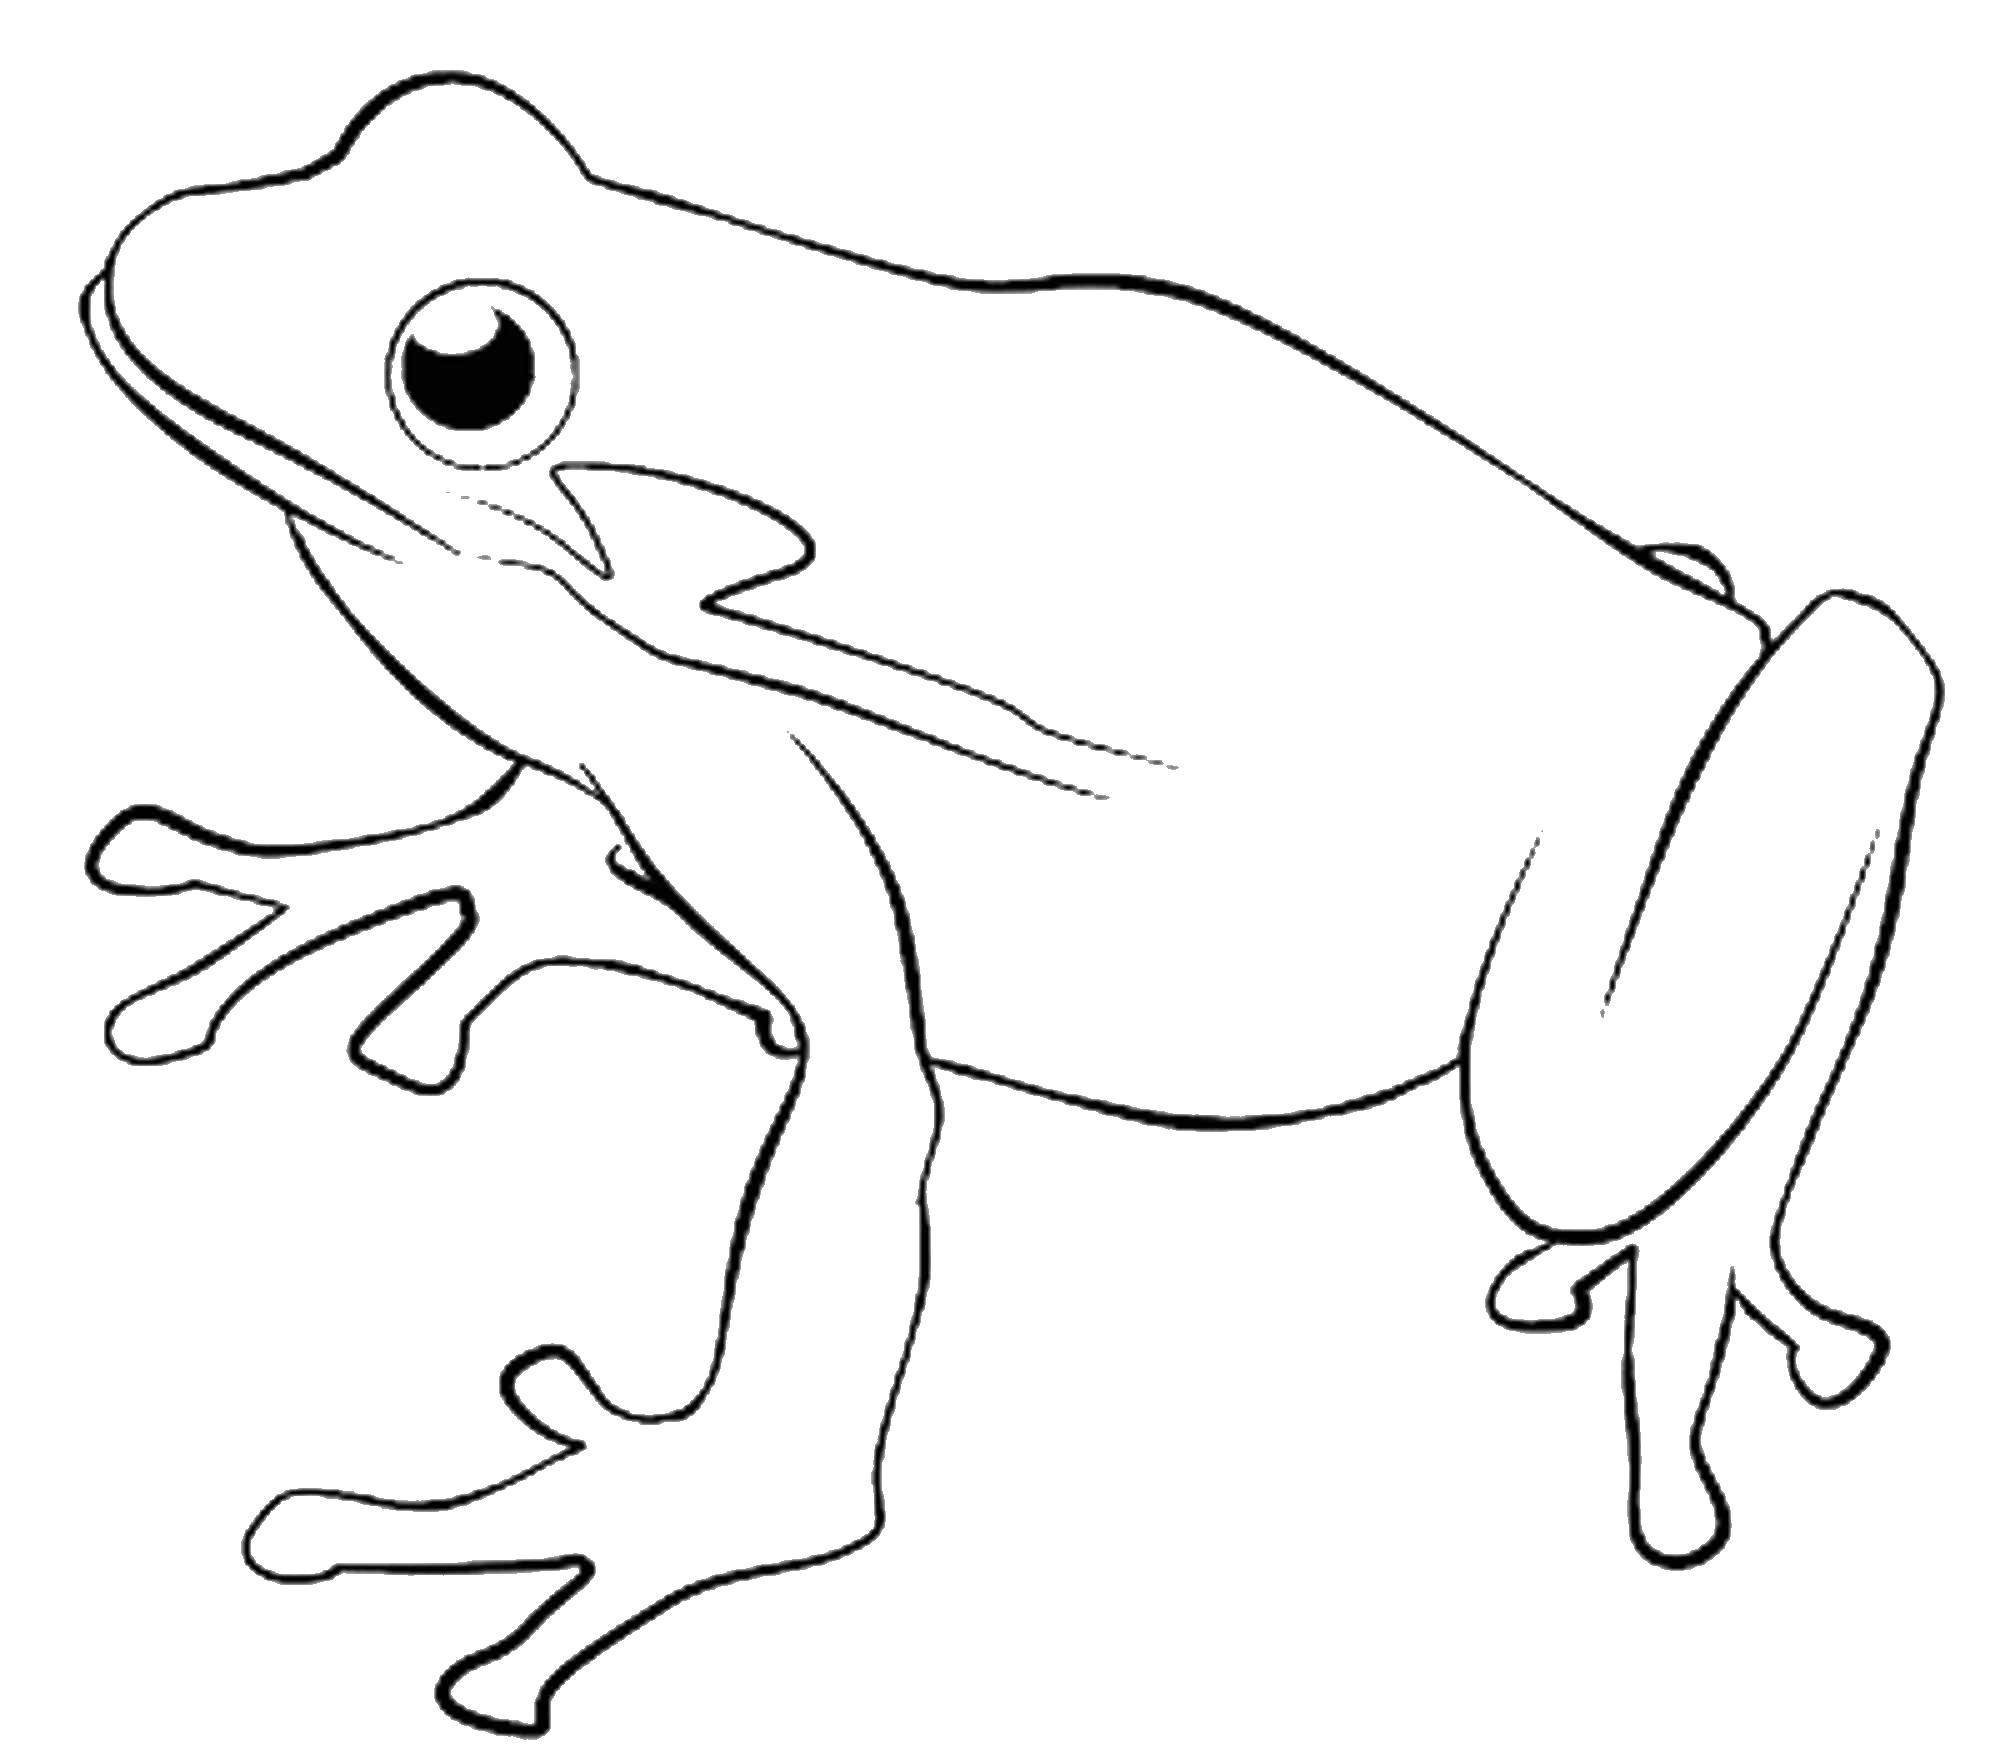 Рисунок лягушки для детей для раскрашивания